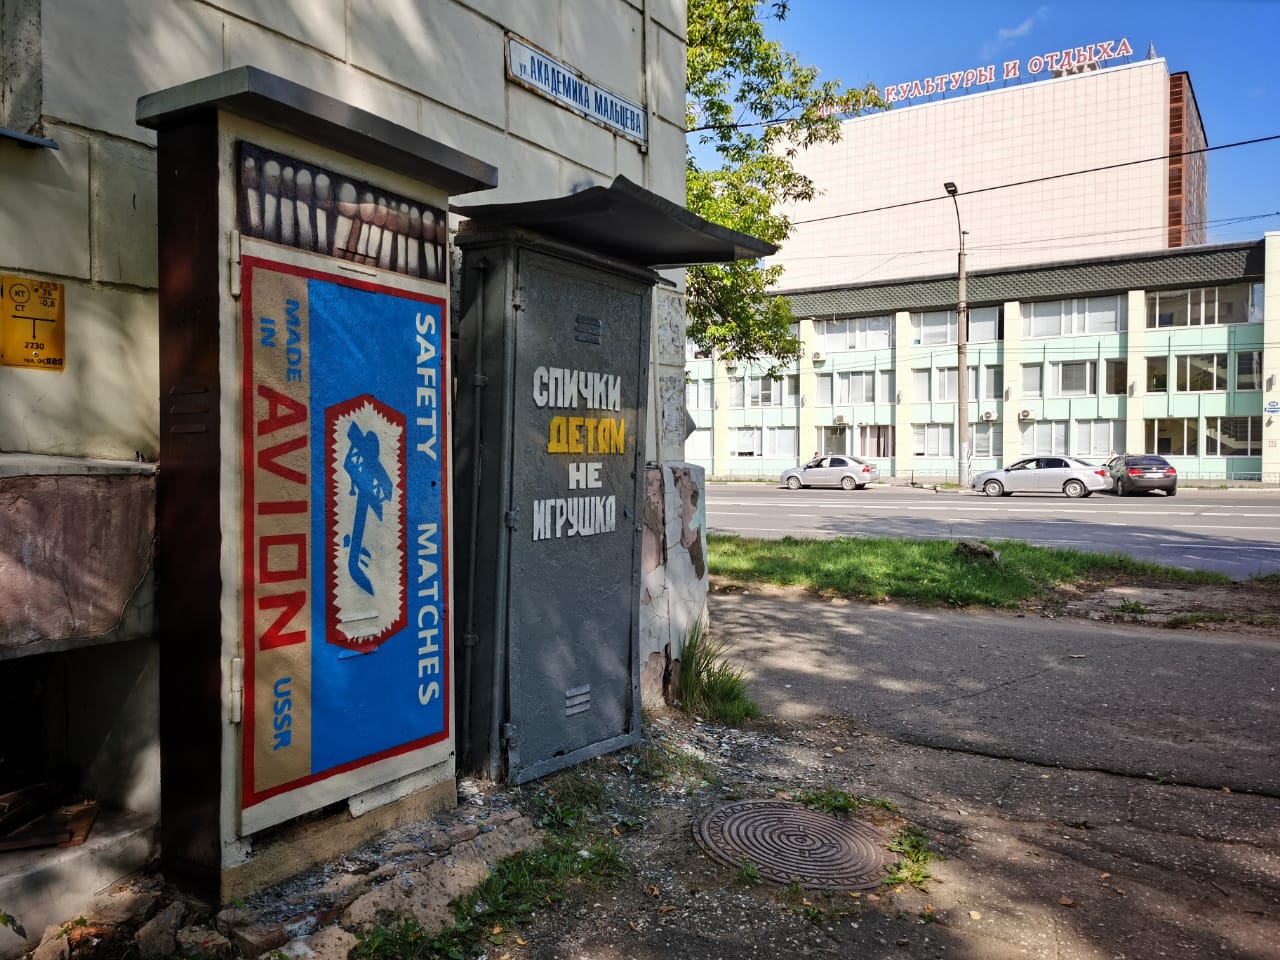 Ящики с коммуникациями в Иванове расписали под коробку спичек и цветы